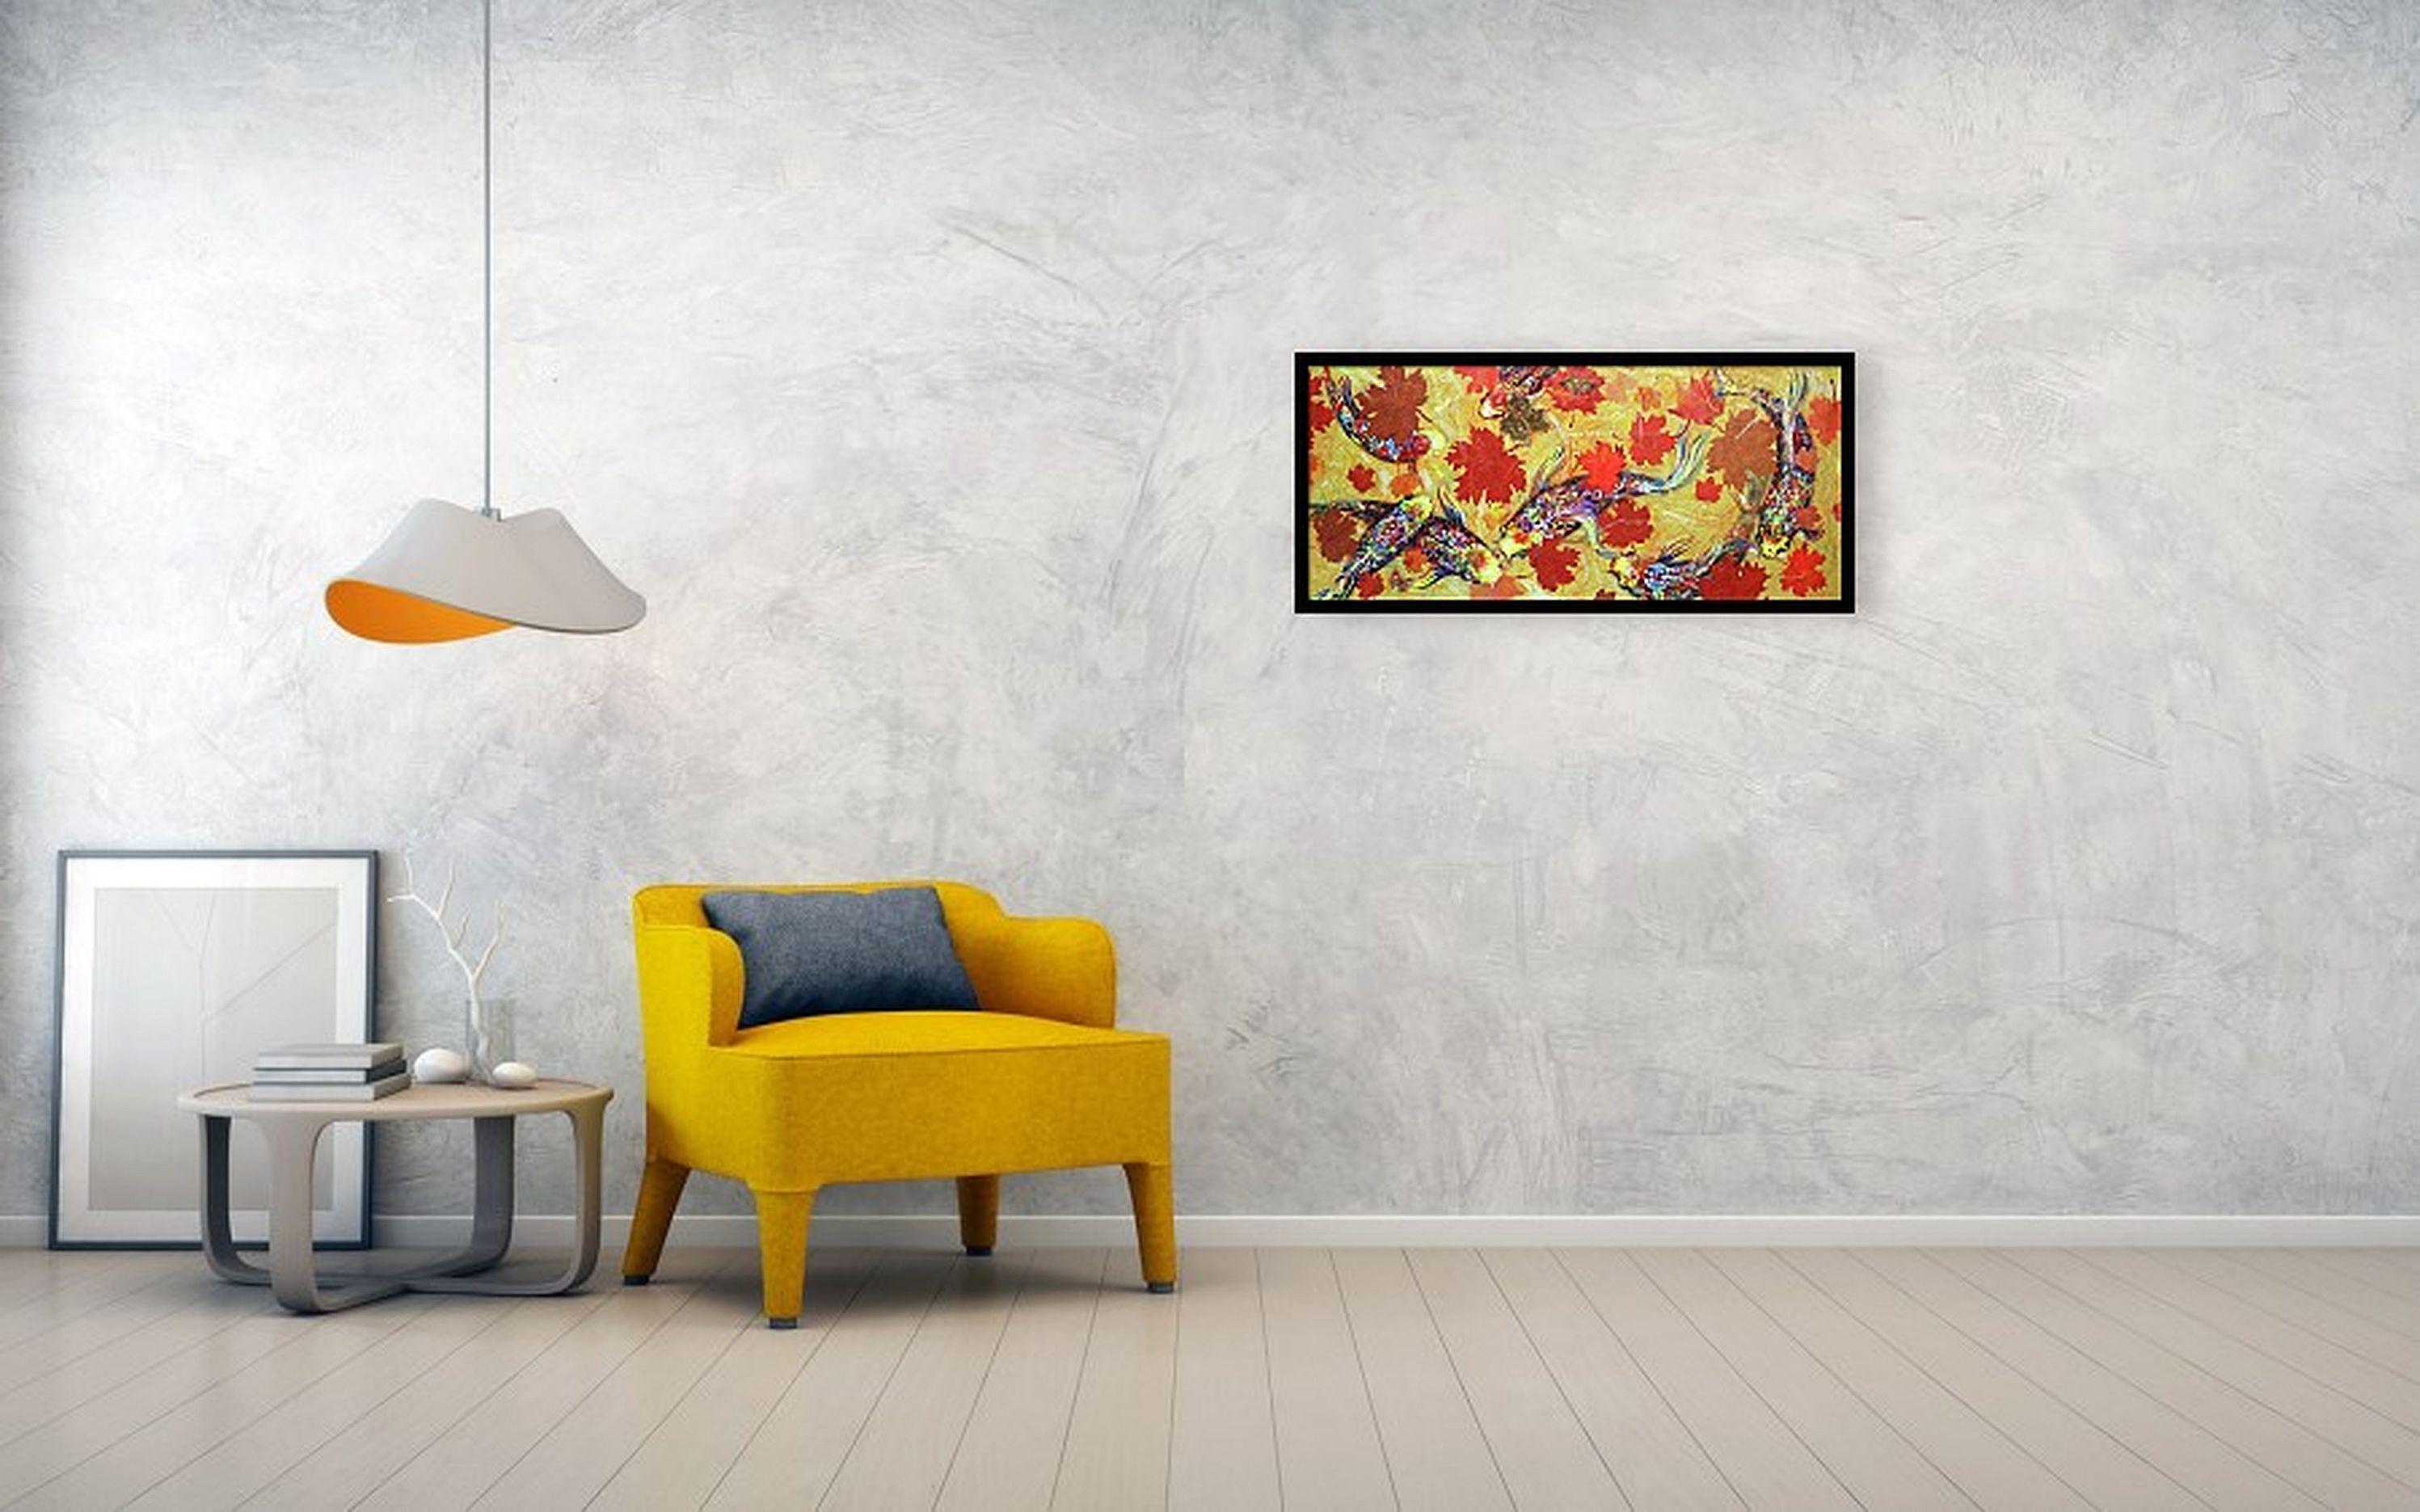 Koi Fish on Yellow - Painting by RAKHMET REDZHEPOV (RAMZI)